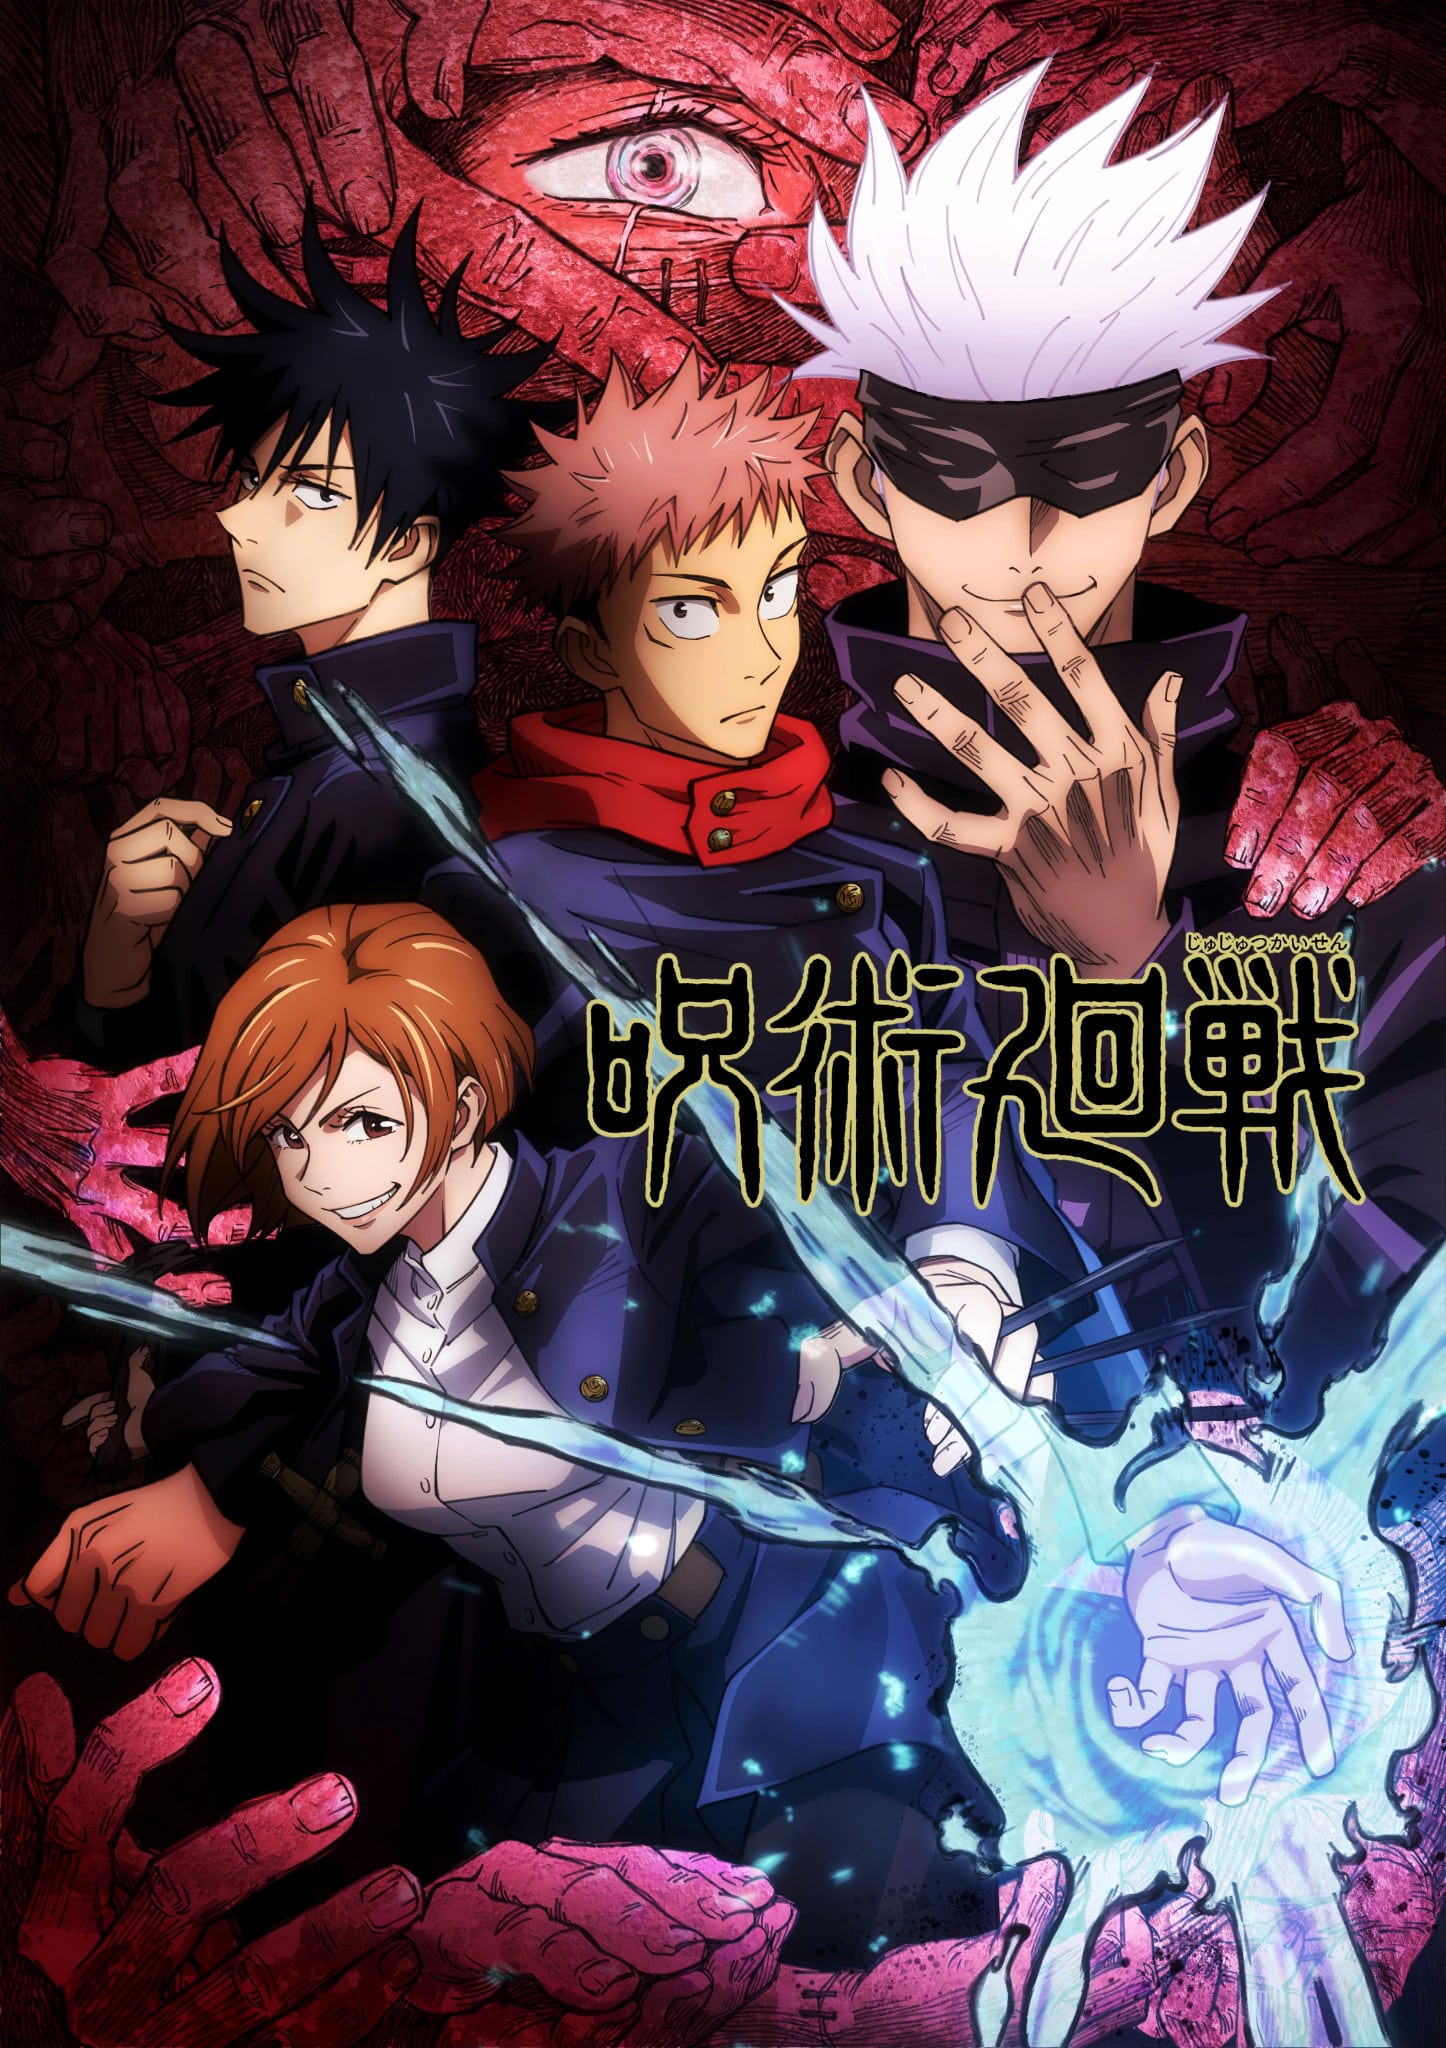 Annonce de Jujutsu Kaisen parmi les animes automne 2020